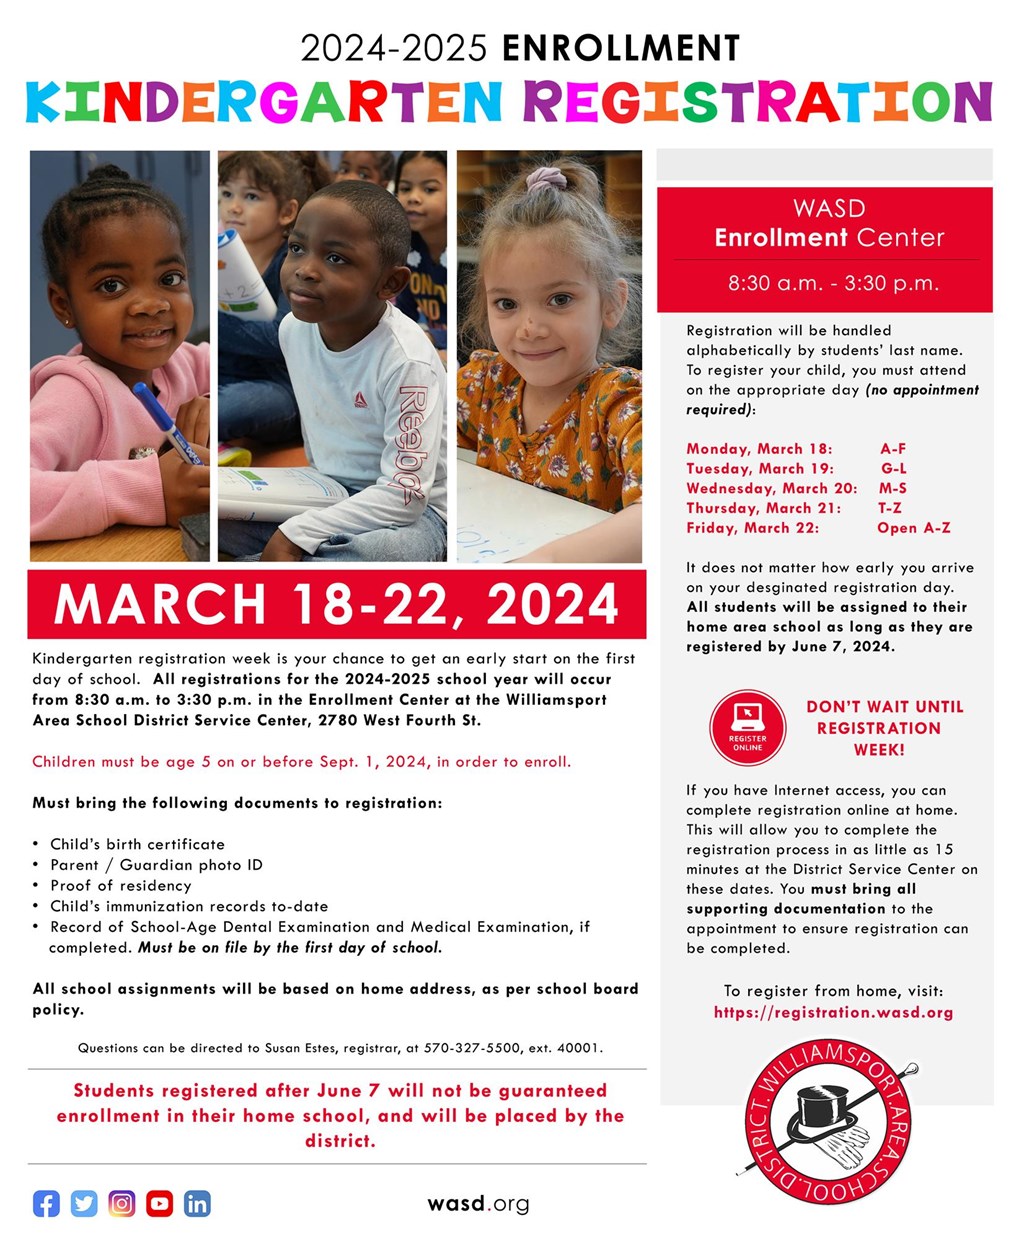 An image of the kindergarten registration flyer.